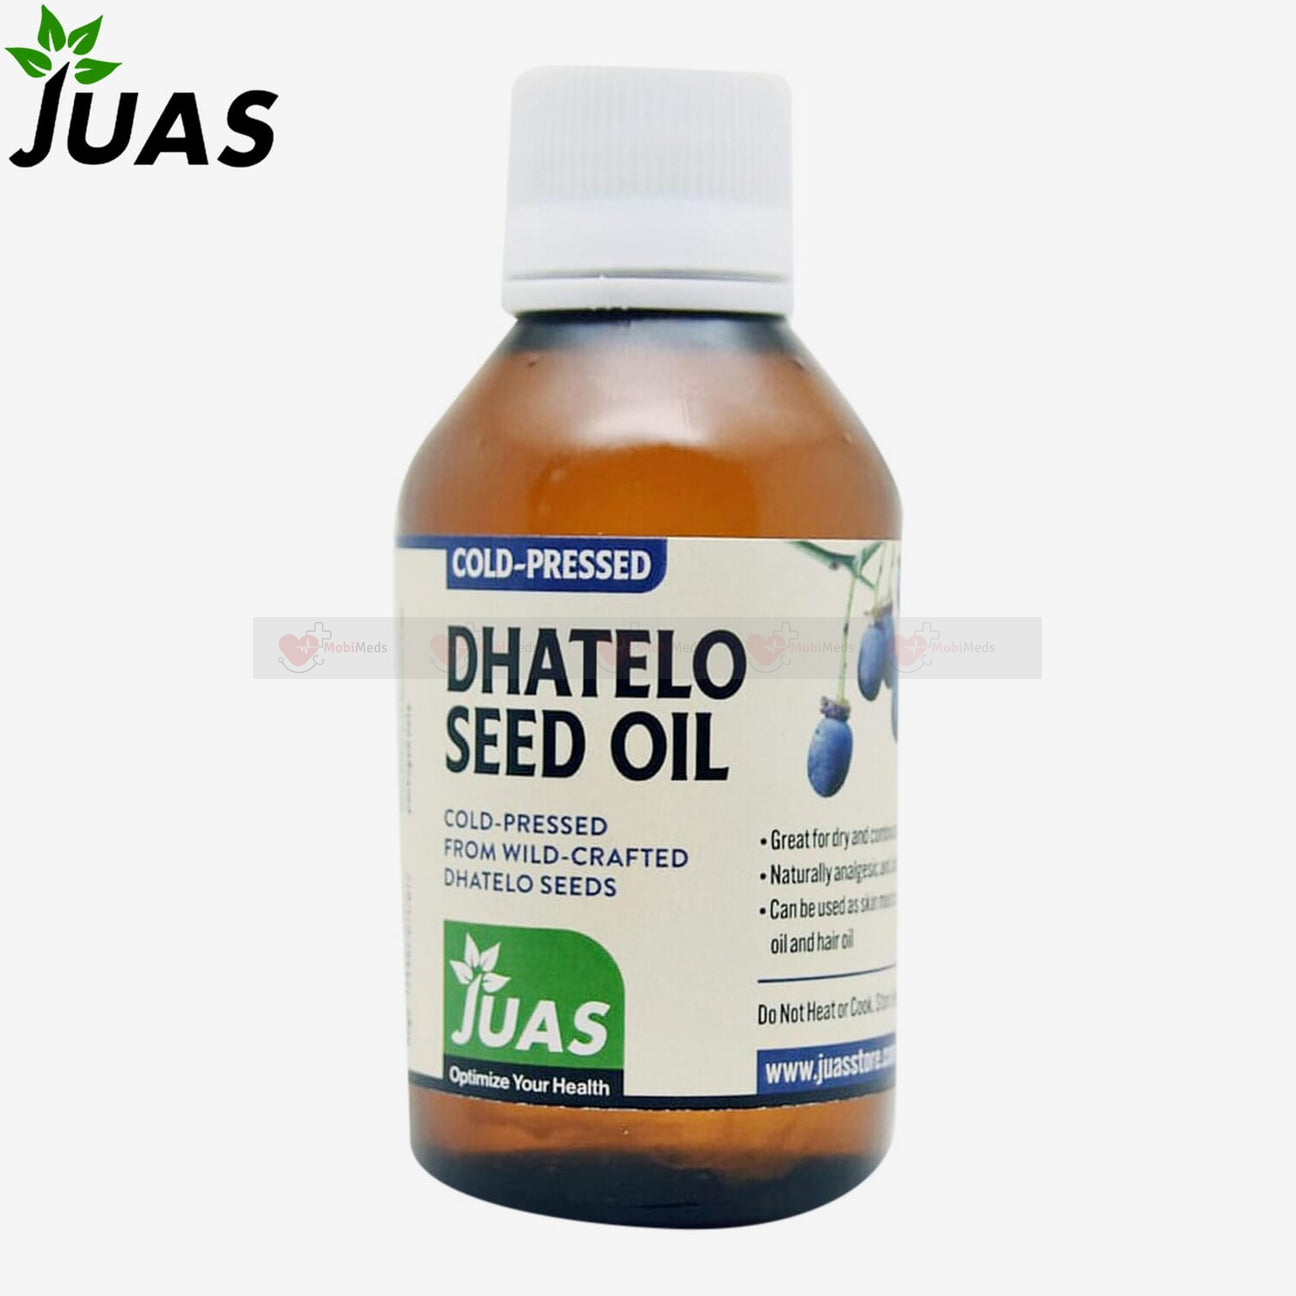 JUAS Dhatelo Seed Oil - Cold-pressed 120ml